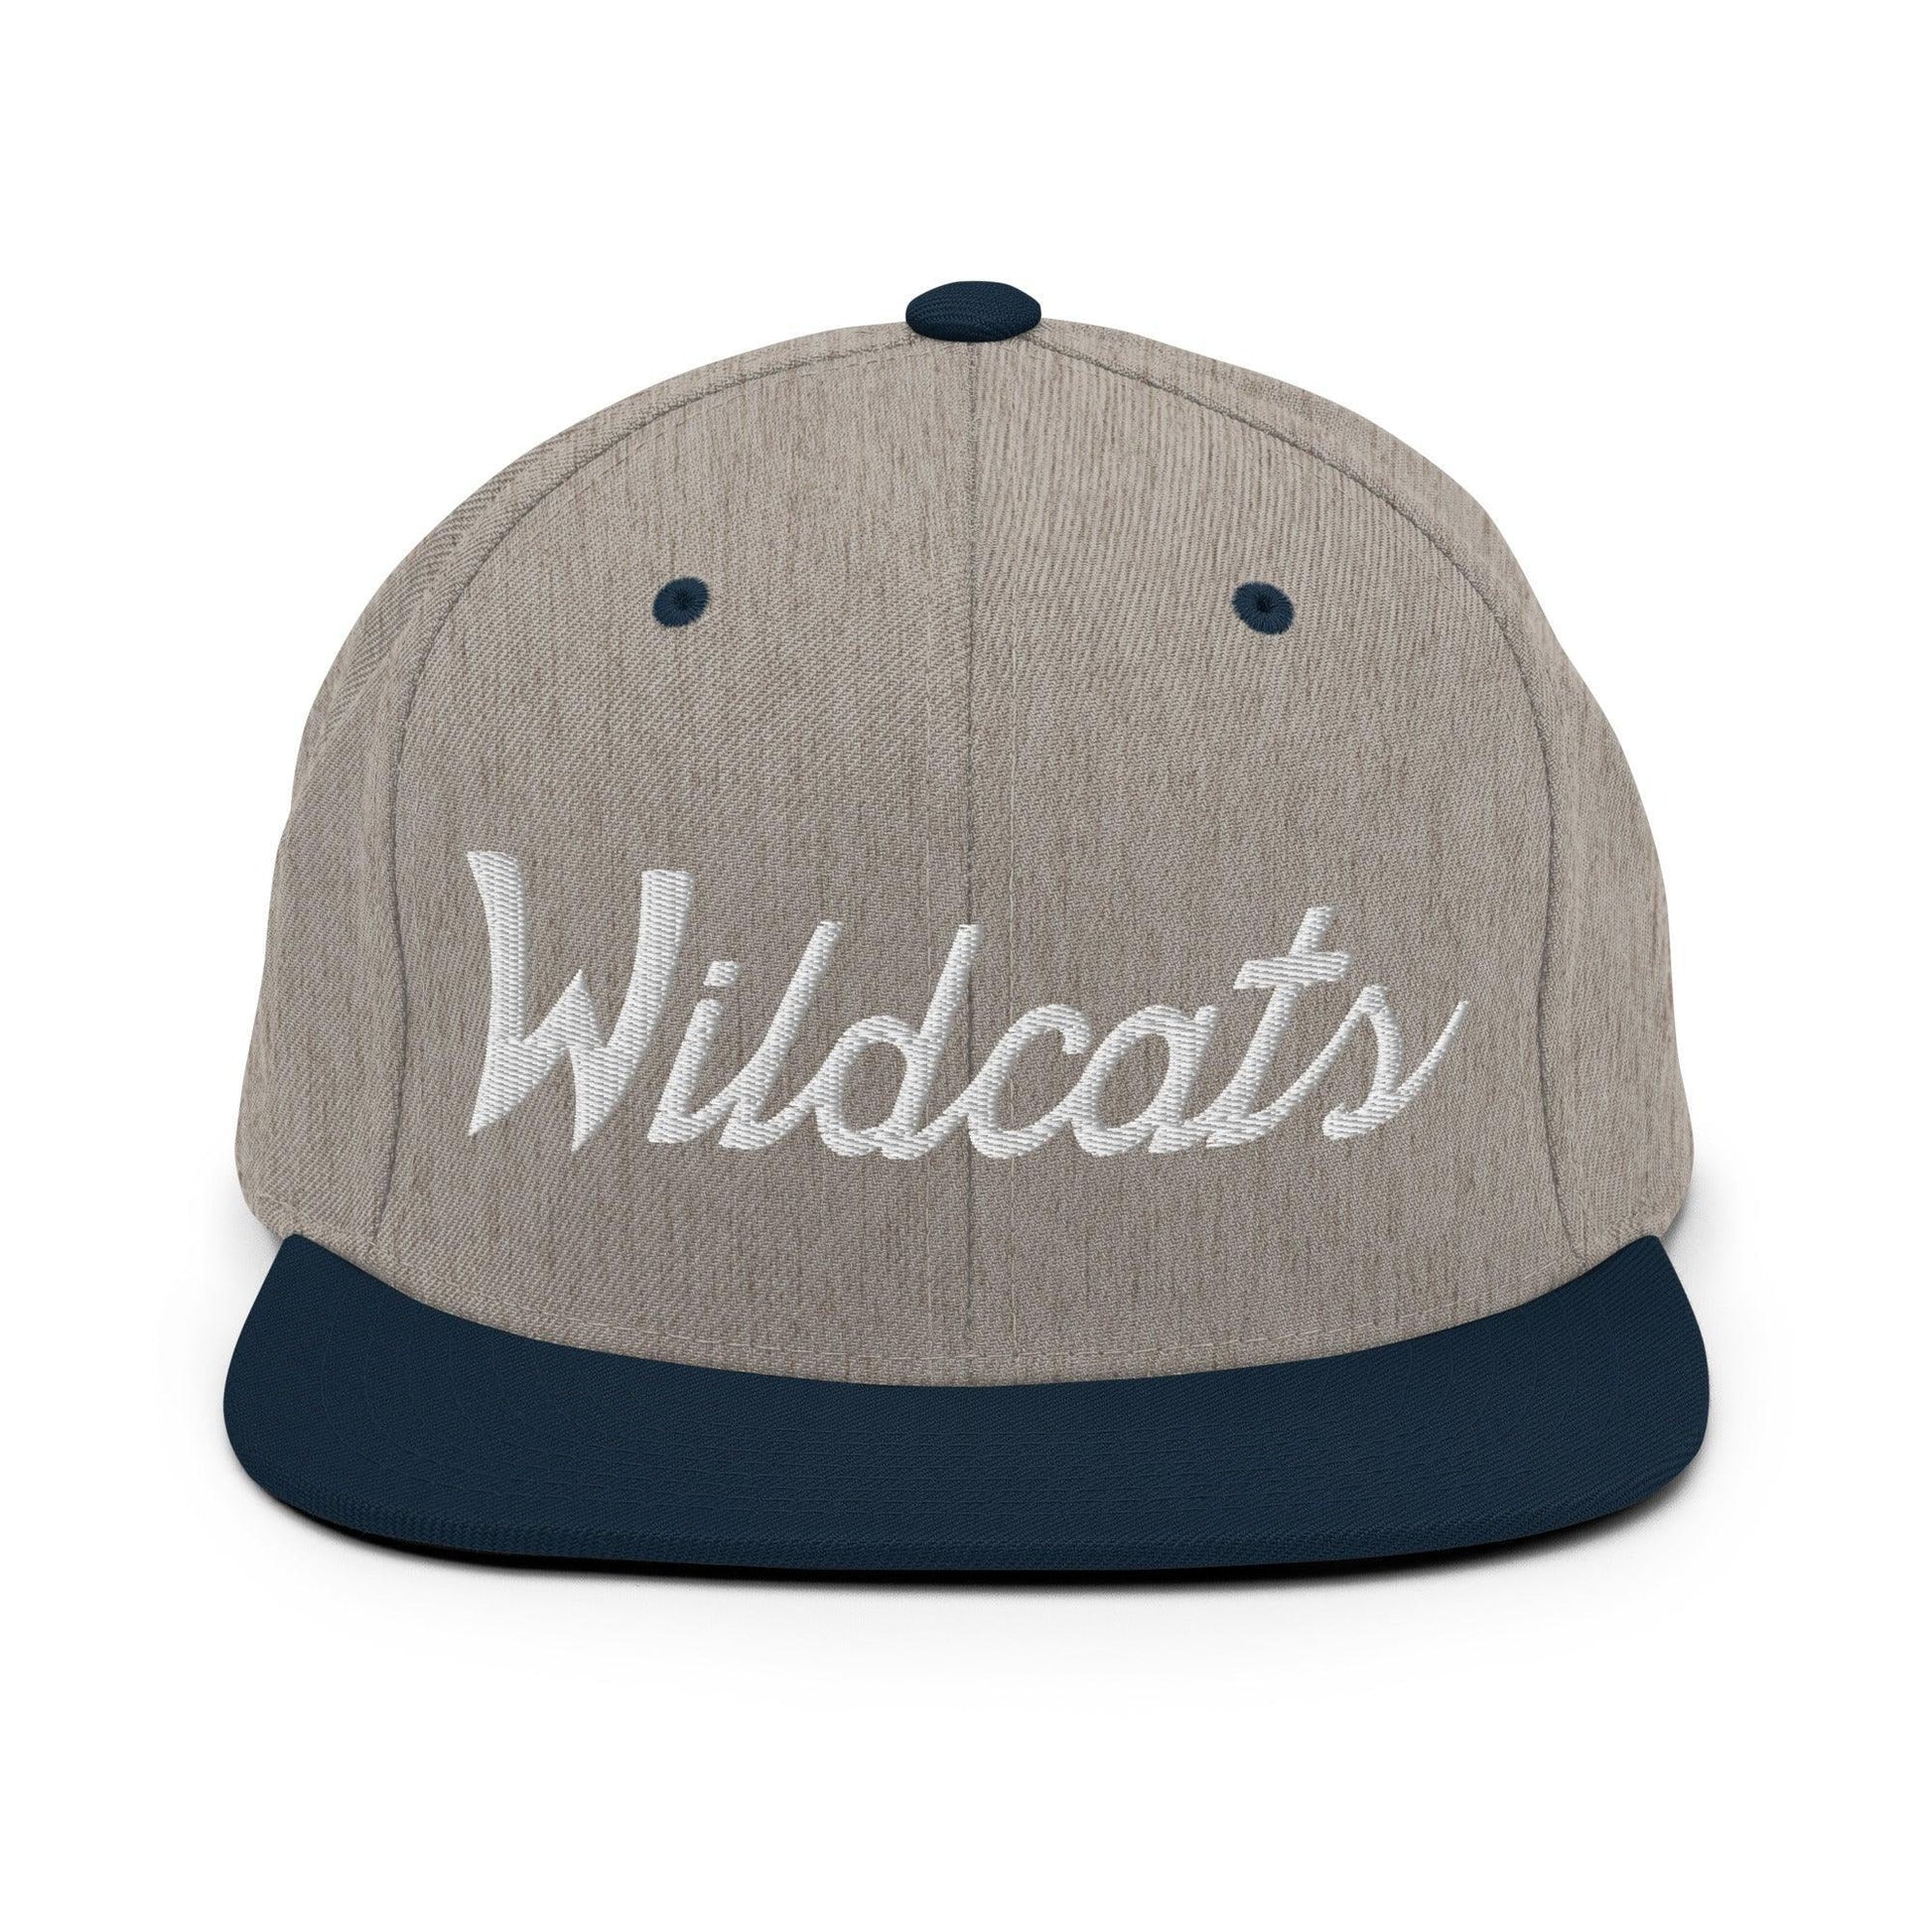 Wildcats School Mascot Script Snapback Hat Heather Grey/ Navy